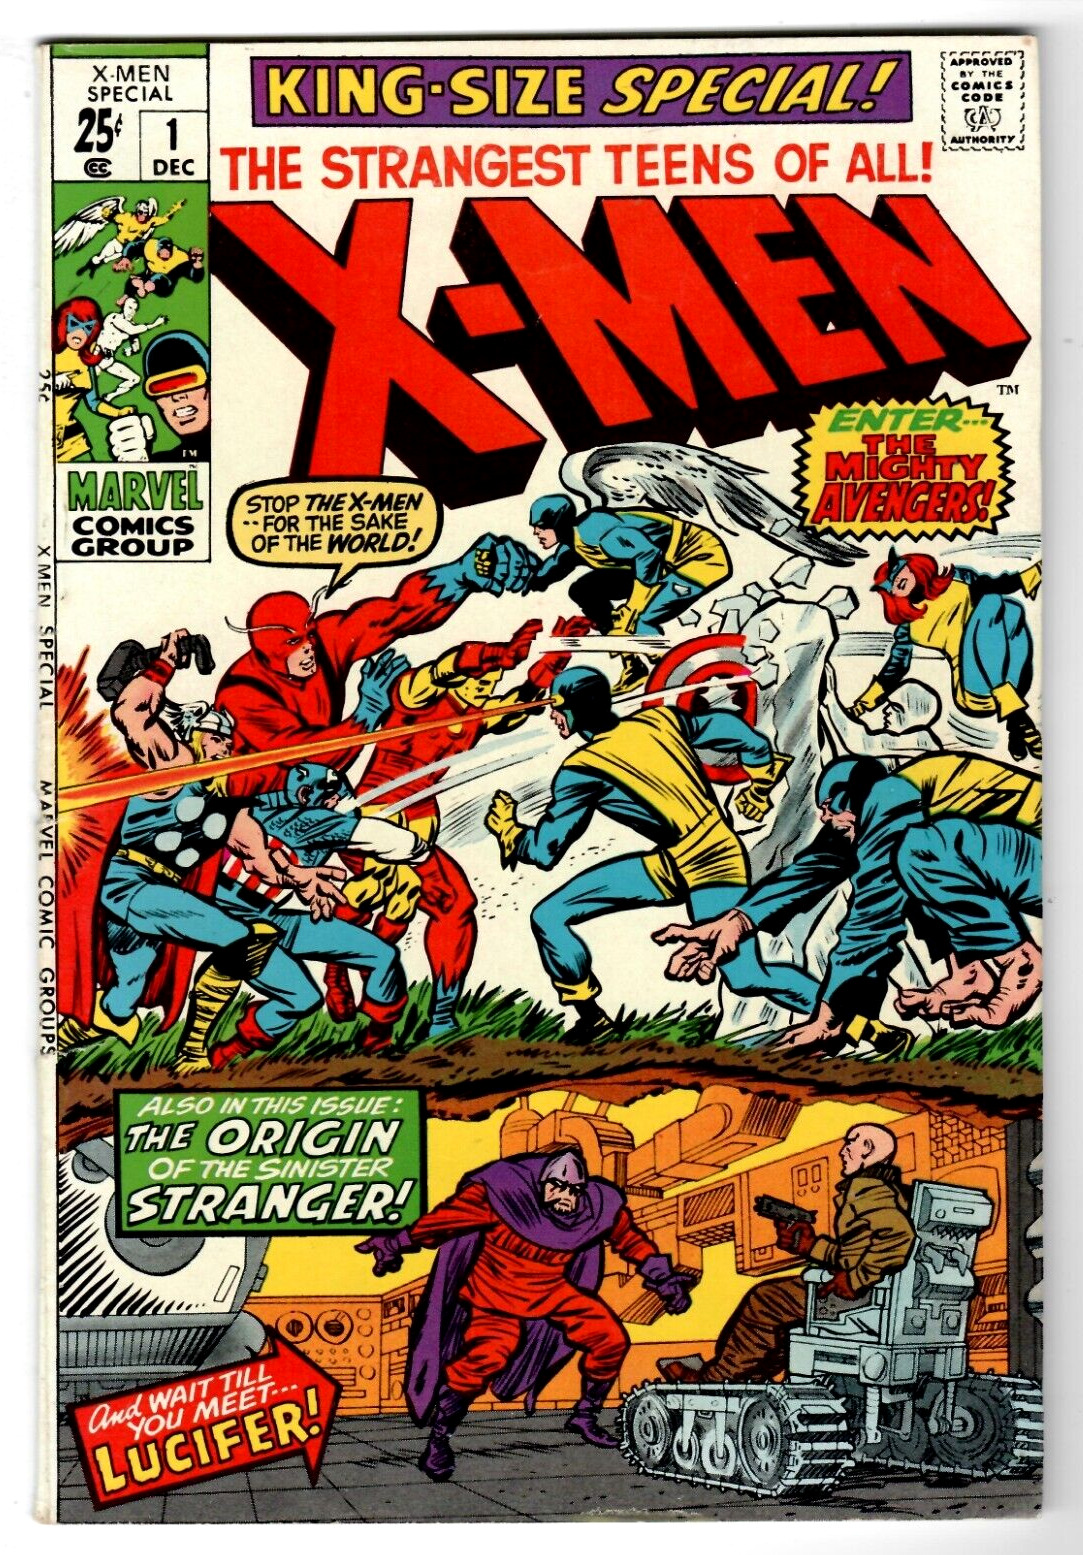 X-MEN SPECIAL #1 Marvel Comics 1970